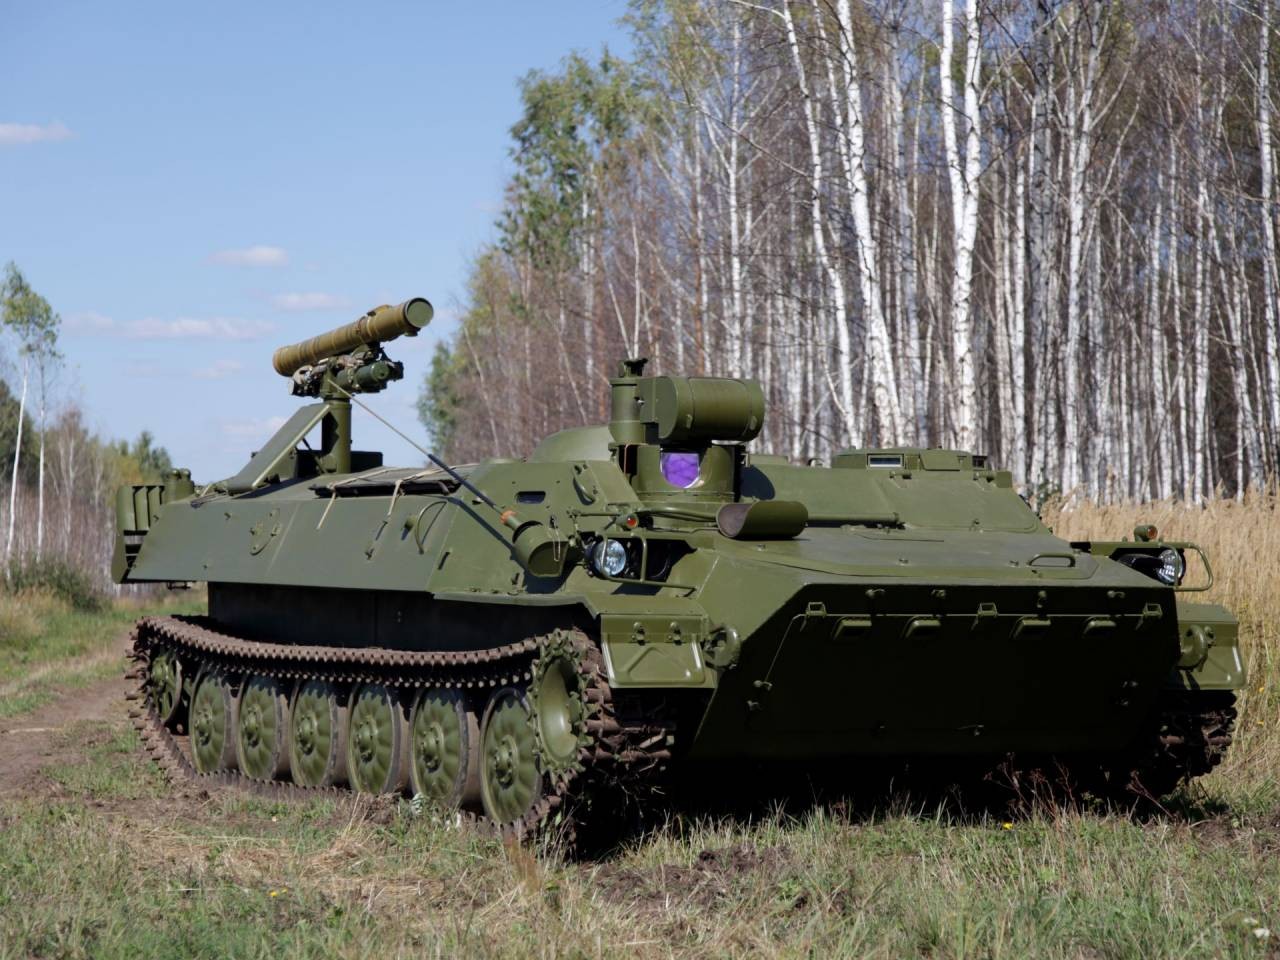 Khó khăn trong chế tạo vũ khí mới, Nga vẫn 'oanh tạc' ở xung đột Ukraine